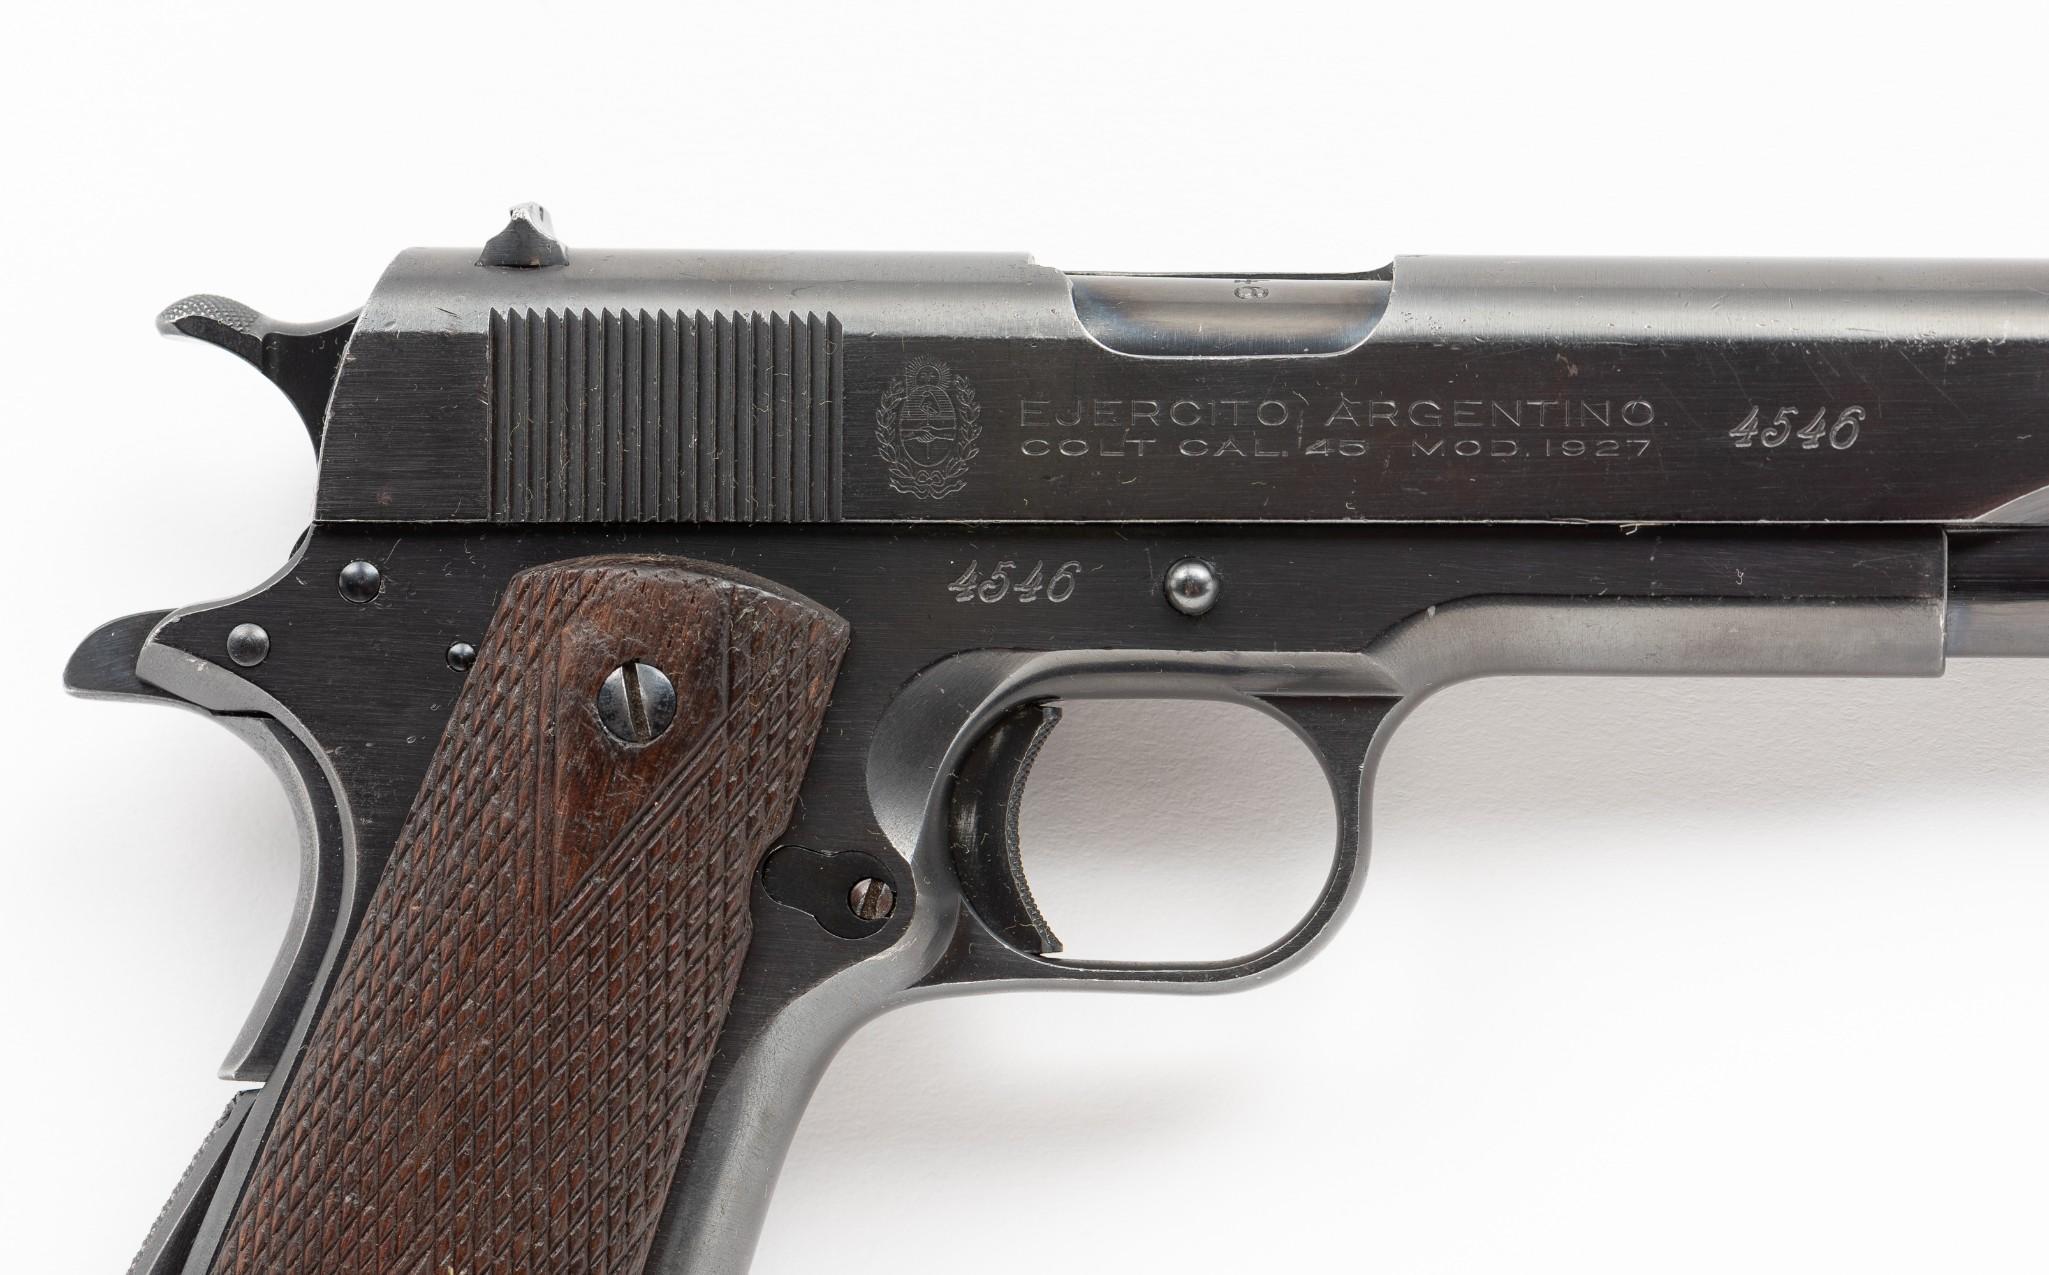 Argentine Colt Mod. 1927 (1911A1 type) .45 Pistol